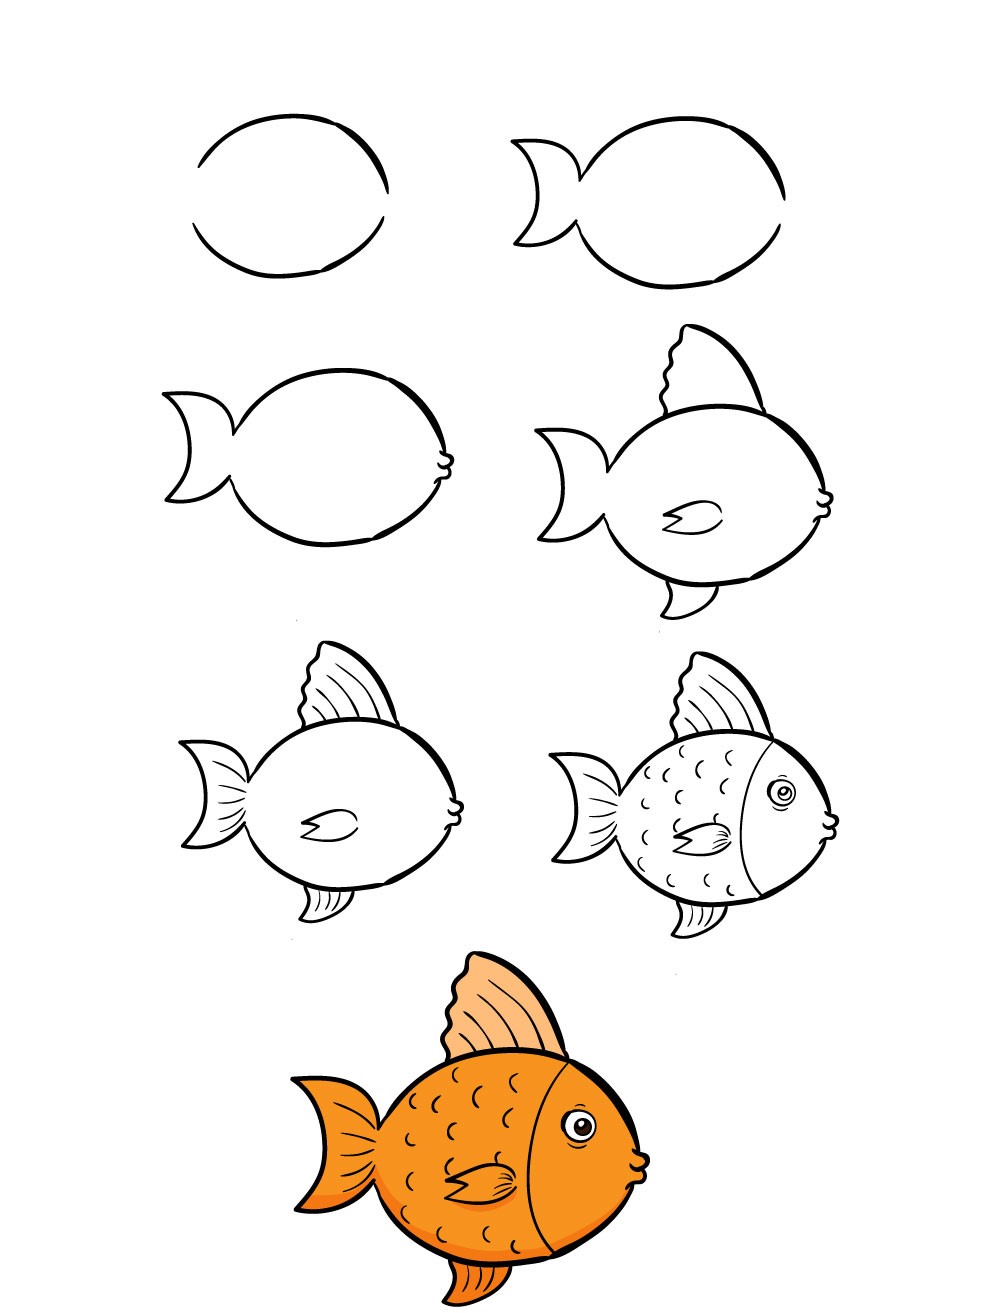 Hãy dành một chút thời gian để học cách vẽ cá theo cách chuyên nghiệp nhất. Chúng tôi cung cấp hướng dẫn chi tiết để giúp bạn tạo ra các bức tranh đơn giản nhưng đầy thú vị.